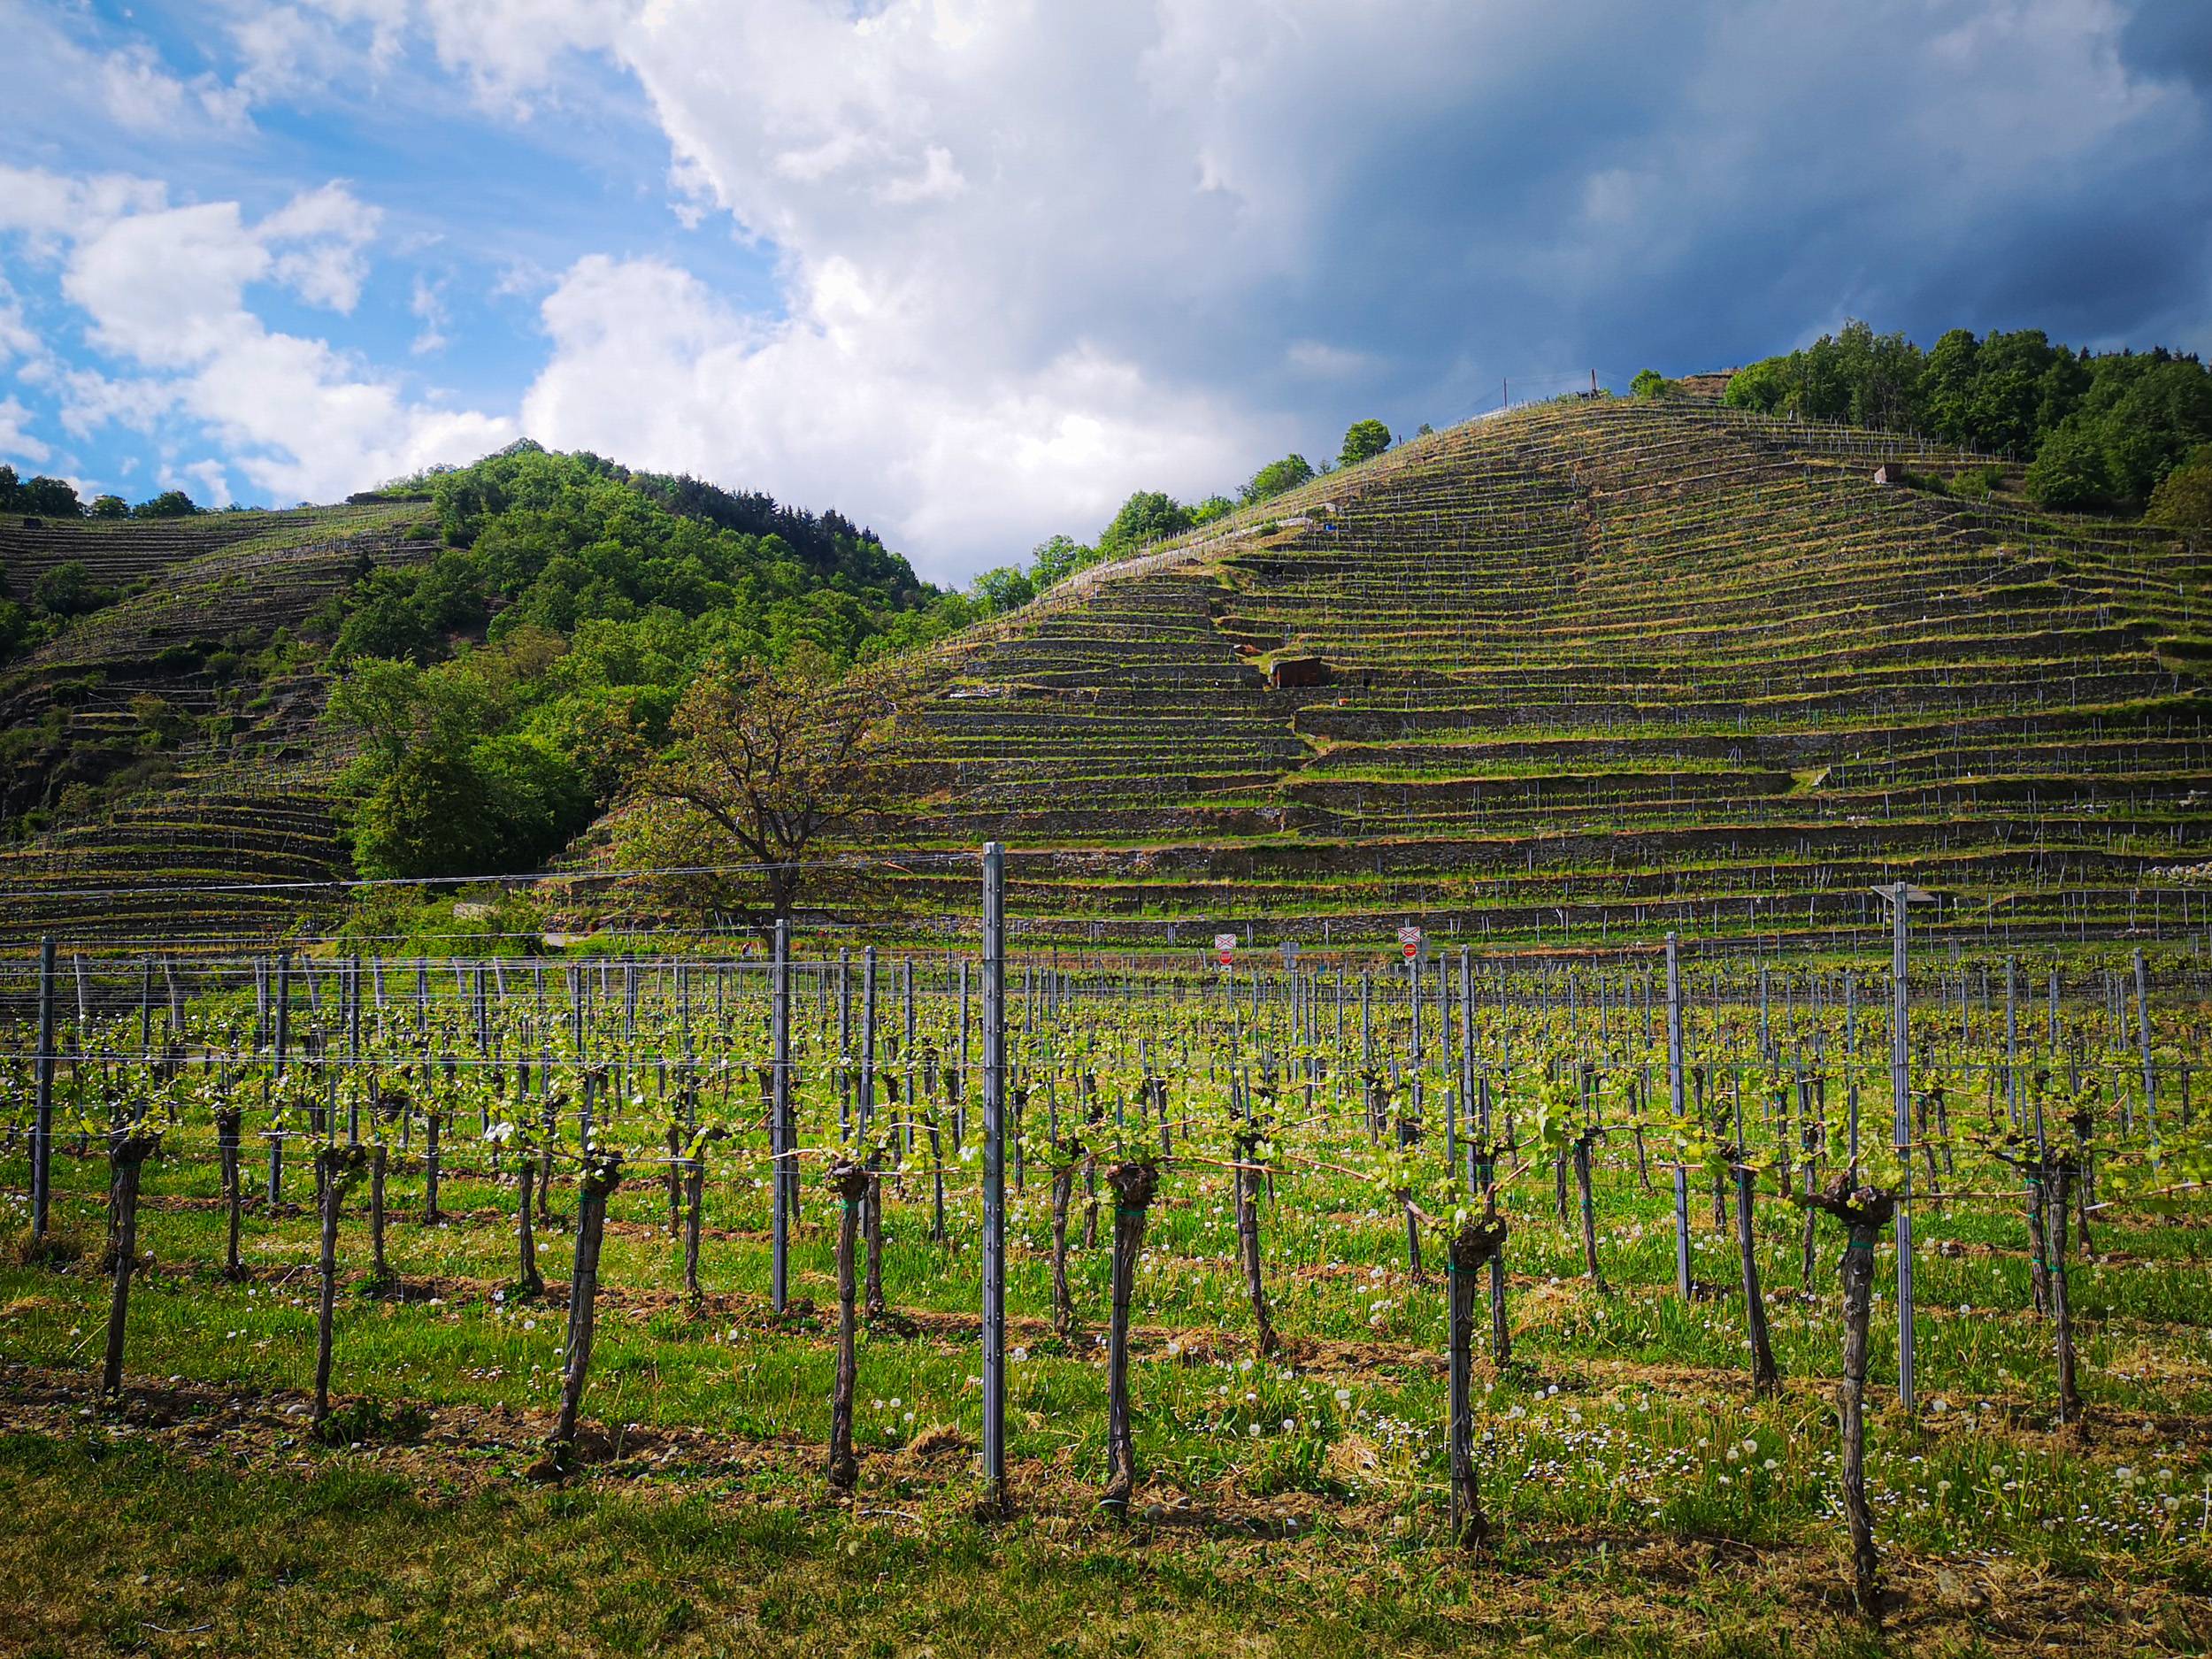 Vineyard hills in Wachau valley, Austria